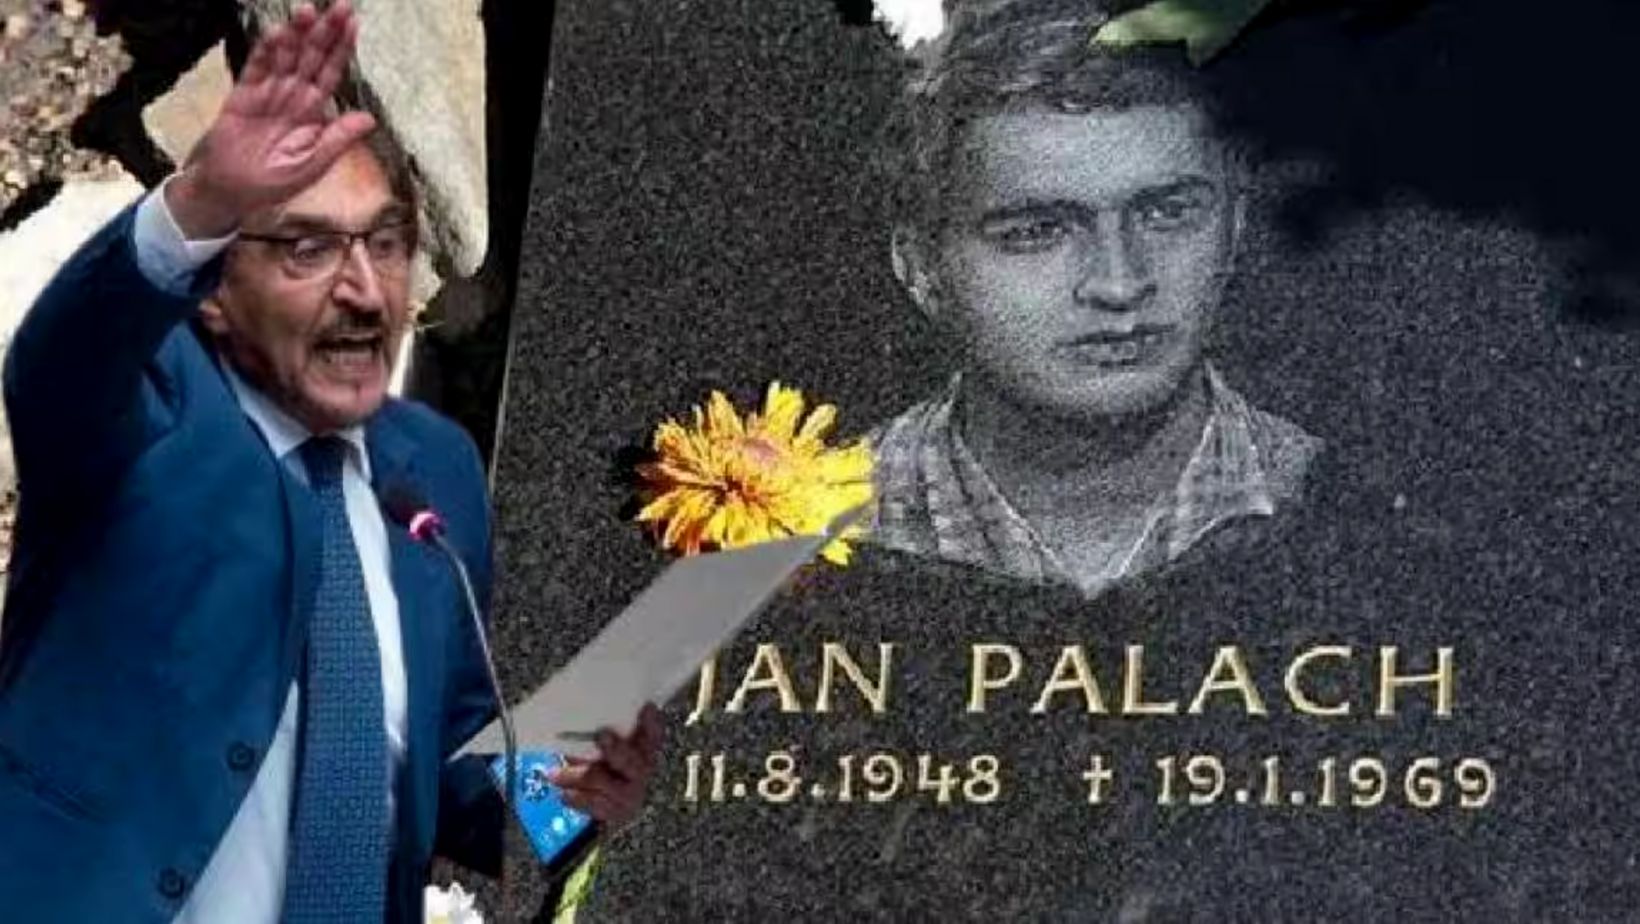 El Senado de Italia honrará al líder de extrema derecha Jan Balach a pesar de las críticas: Mañana de Praga